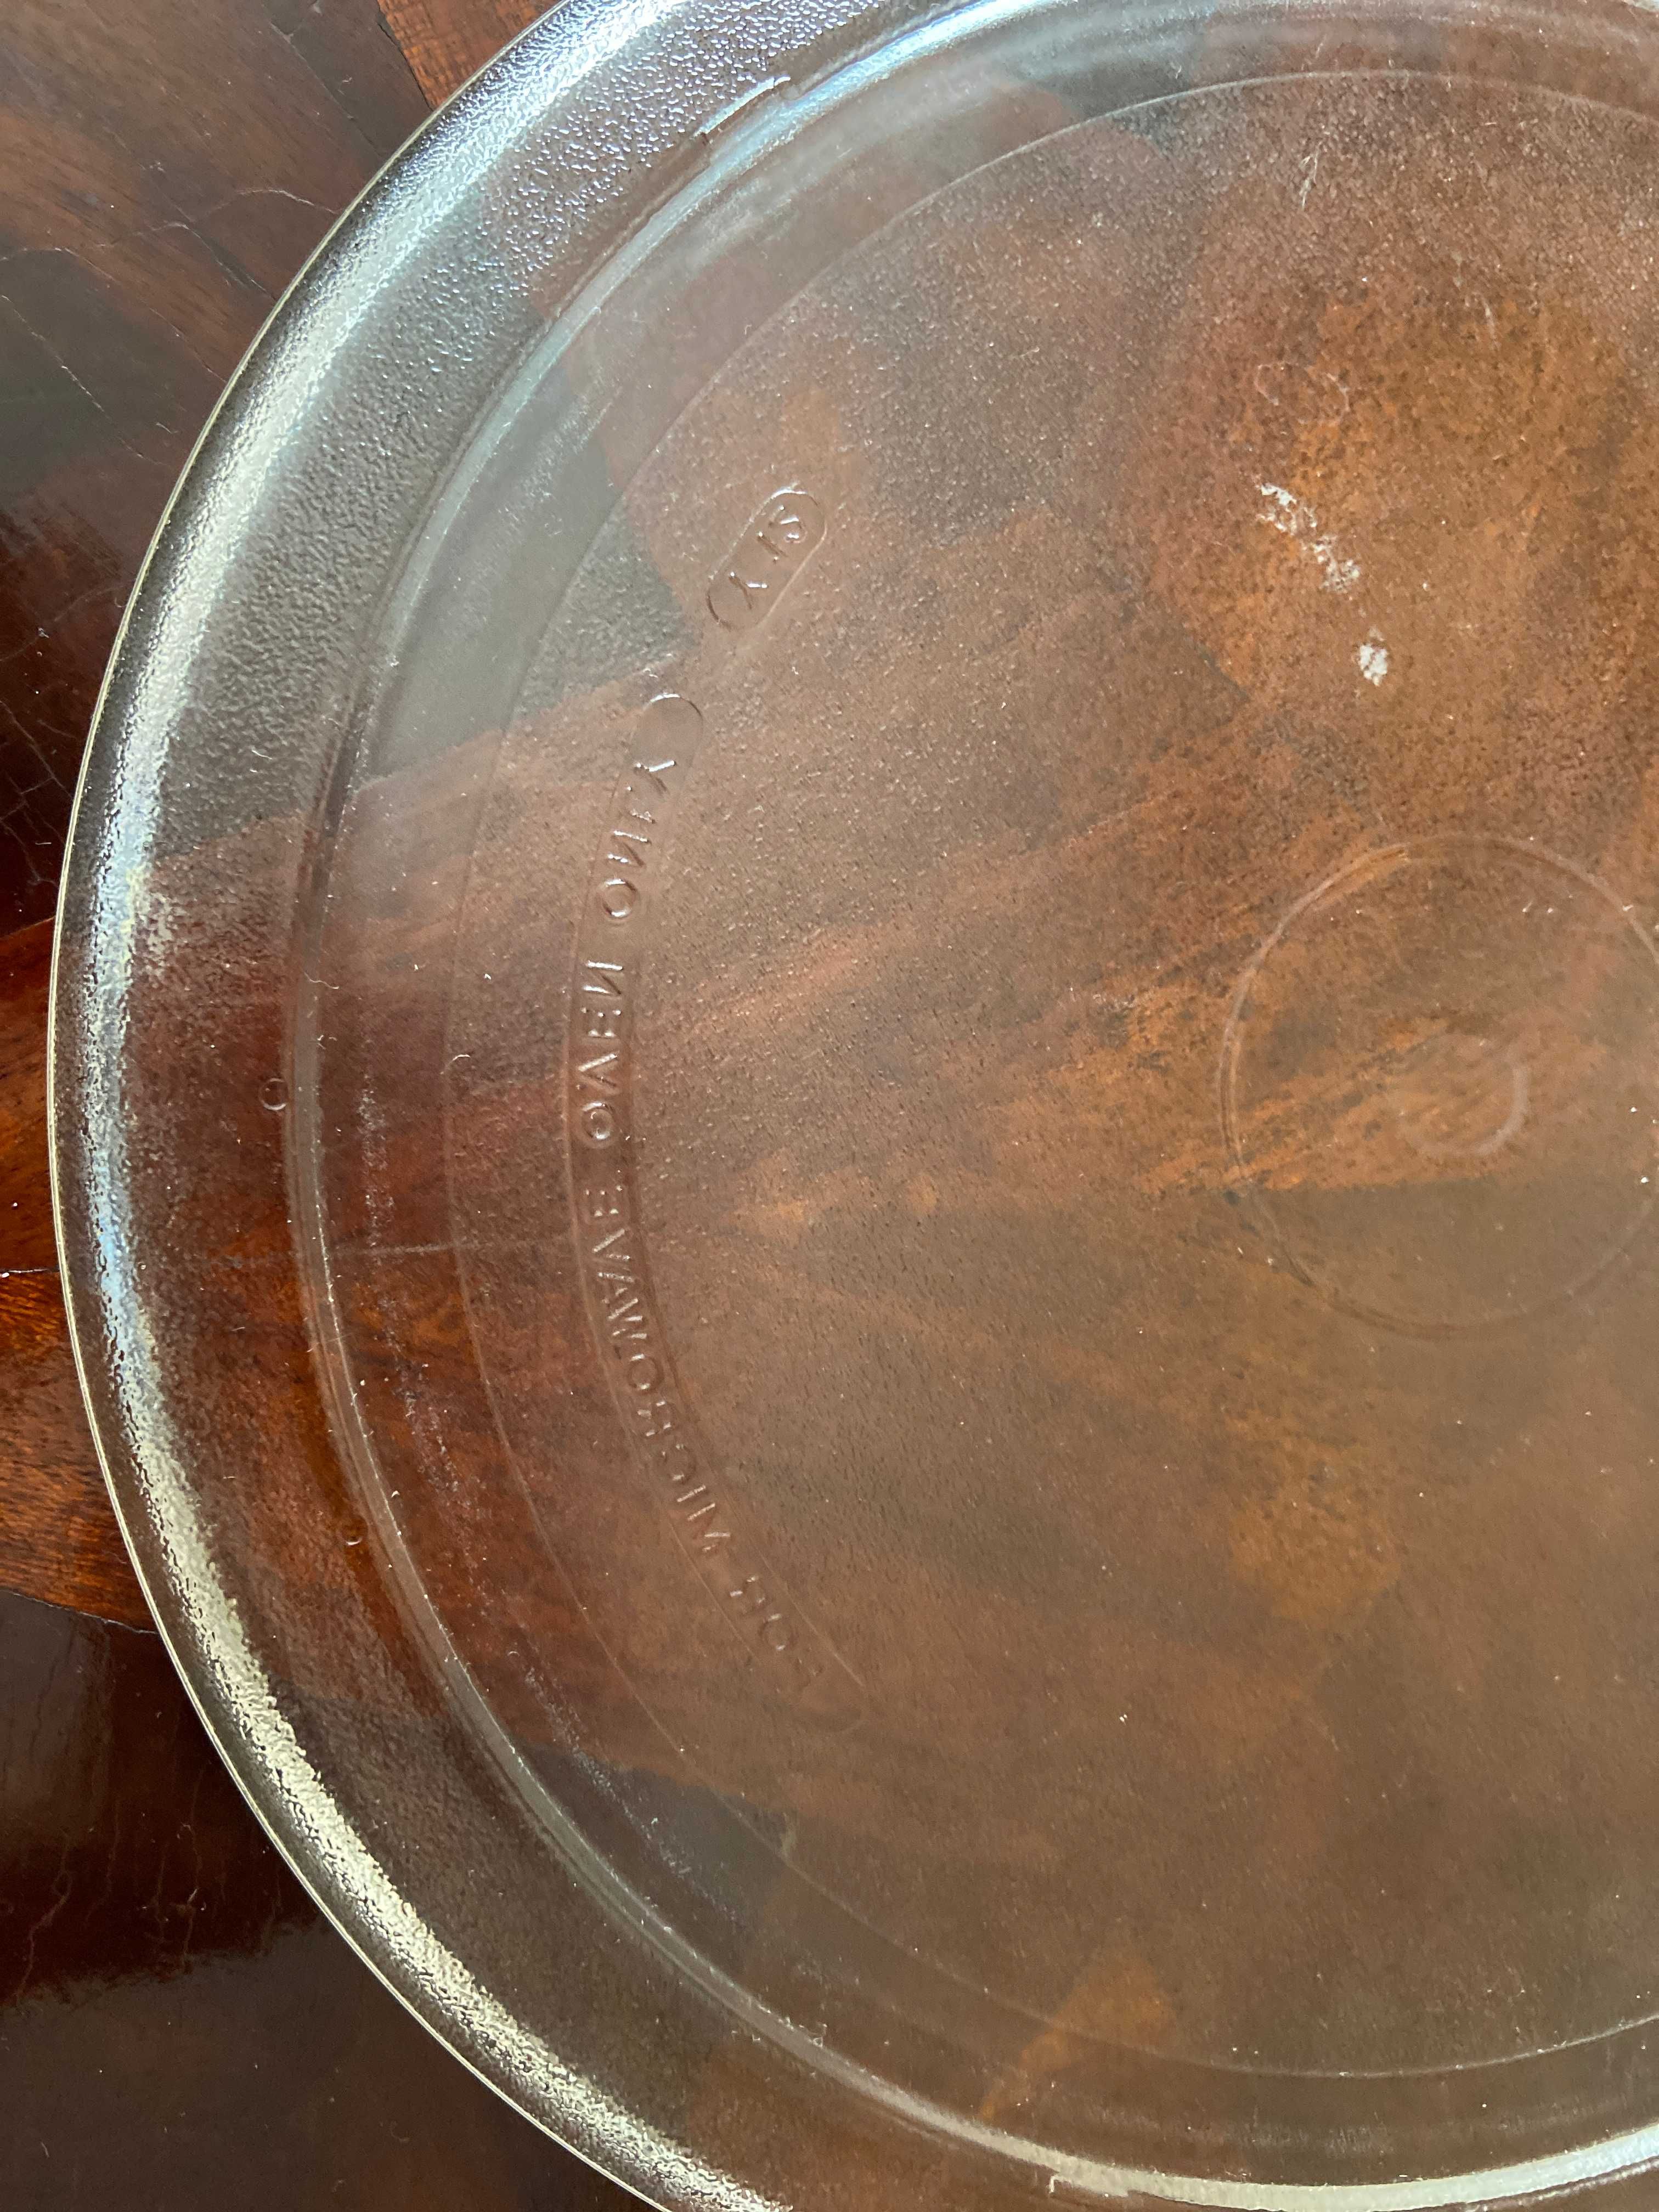 Talerz szklany 27 cm do kuchenki mikrofalowej Whirpool